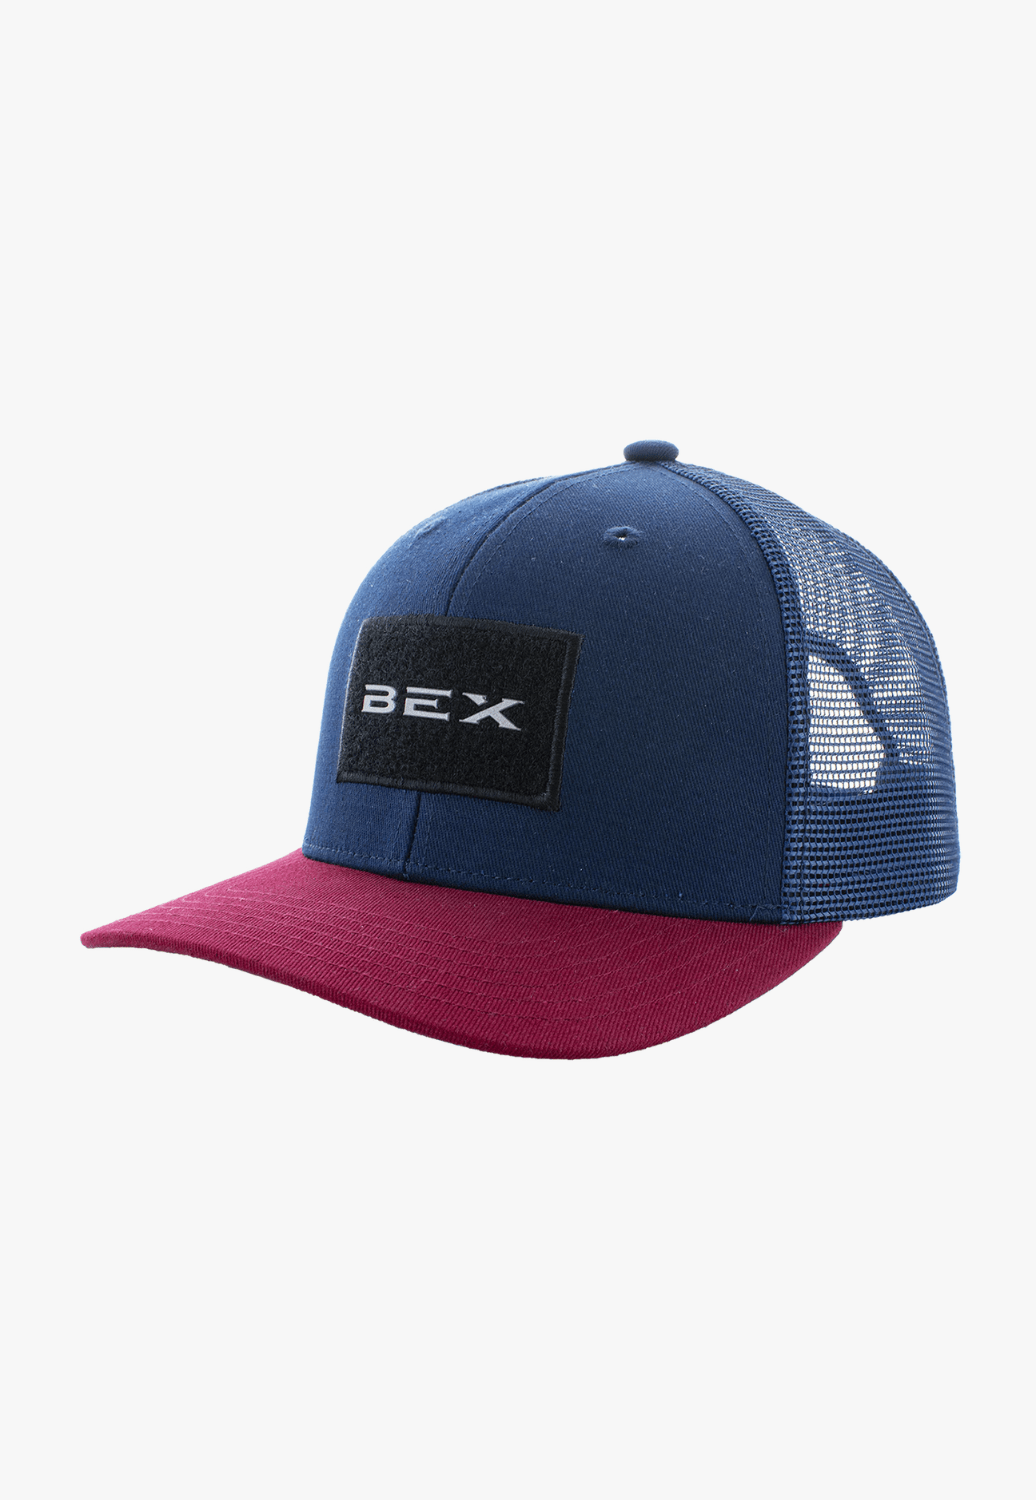 BEX HATS - Caps Navy/Red Bex Stickem Cap